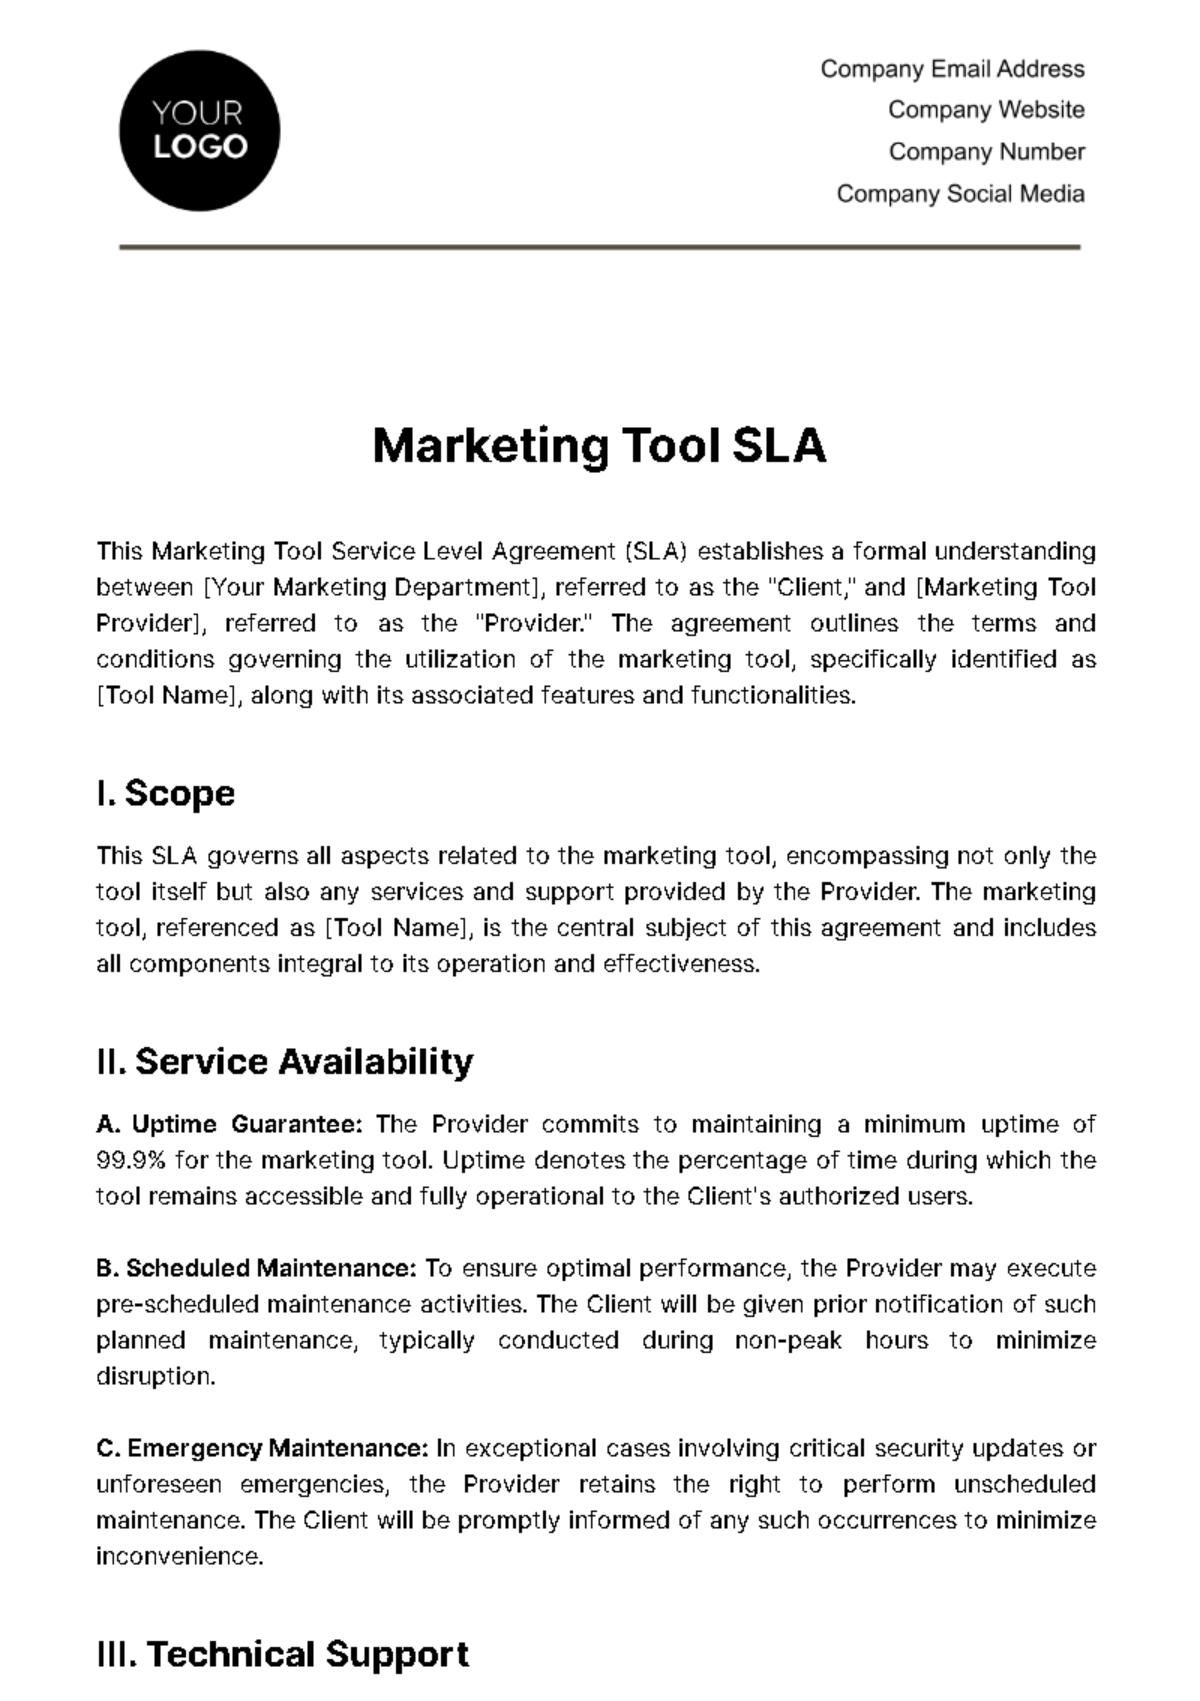 Marketing Tool SLA Template